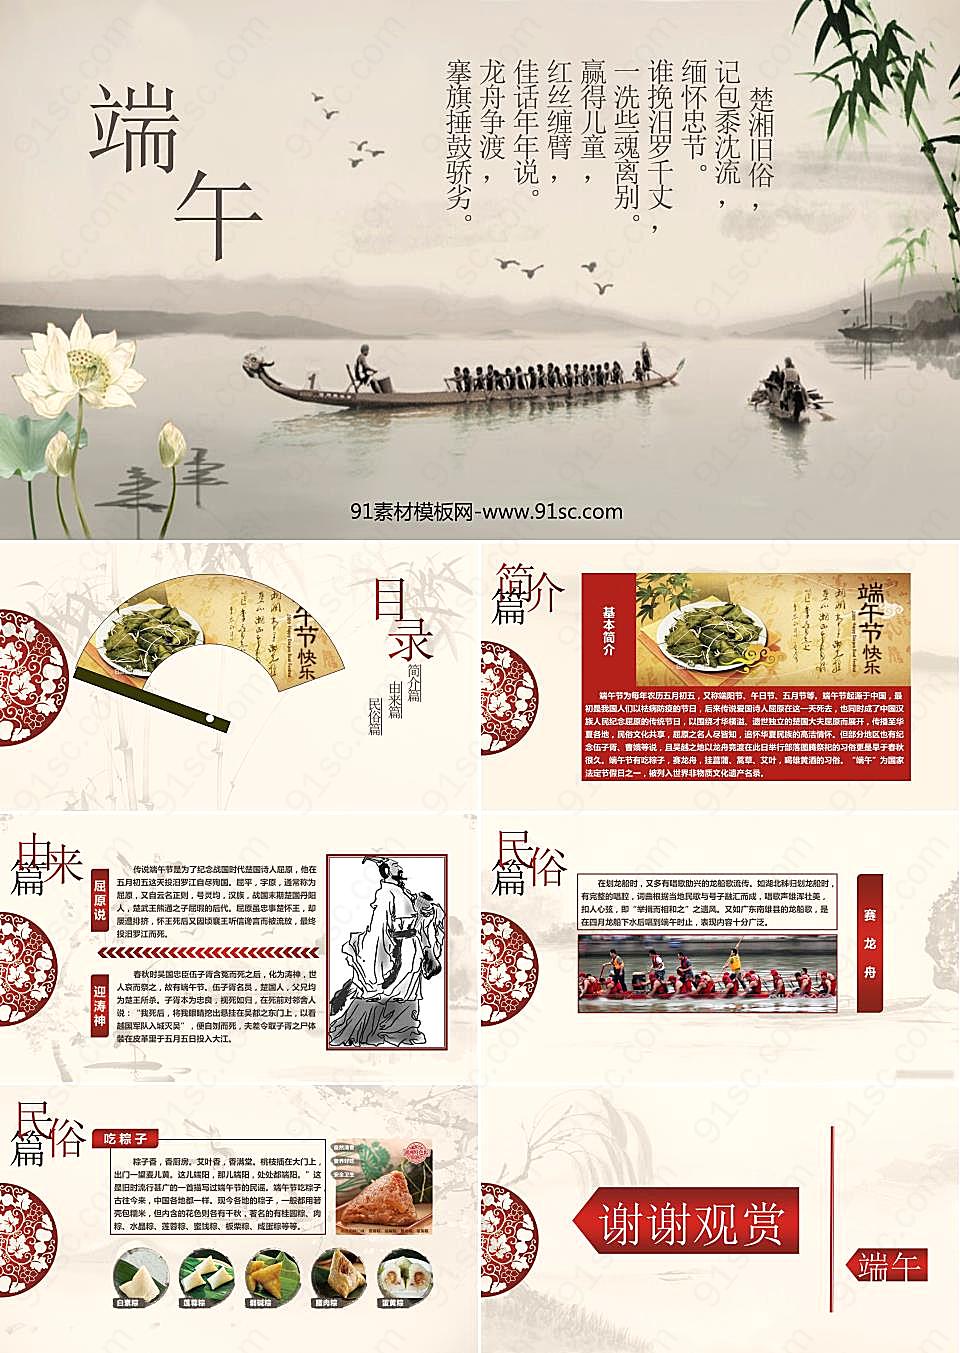 划龙舟背景的中国风端午节幻灯片模板PPT模板